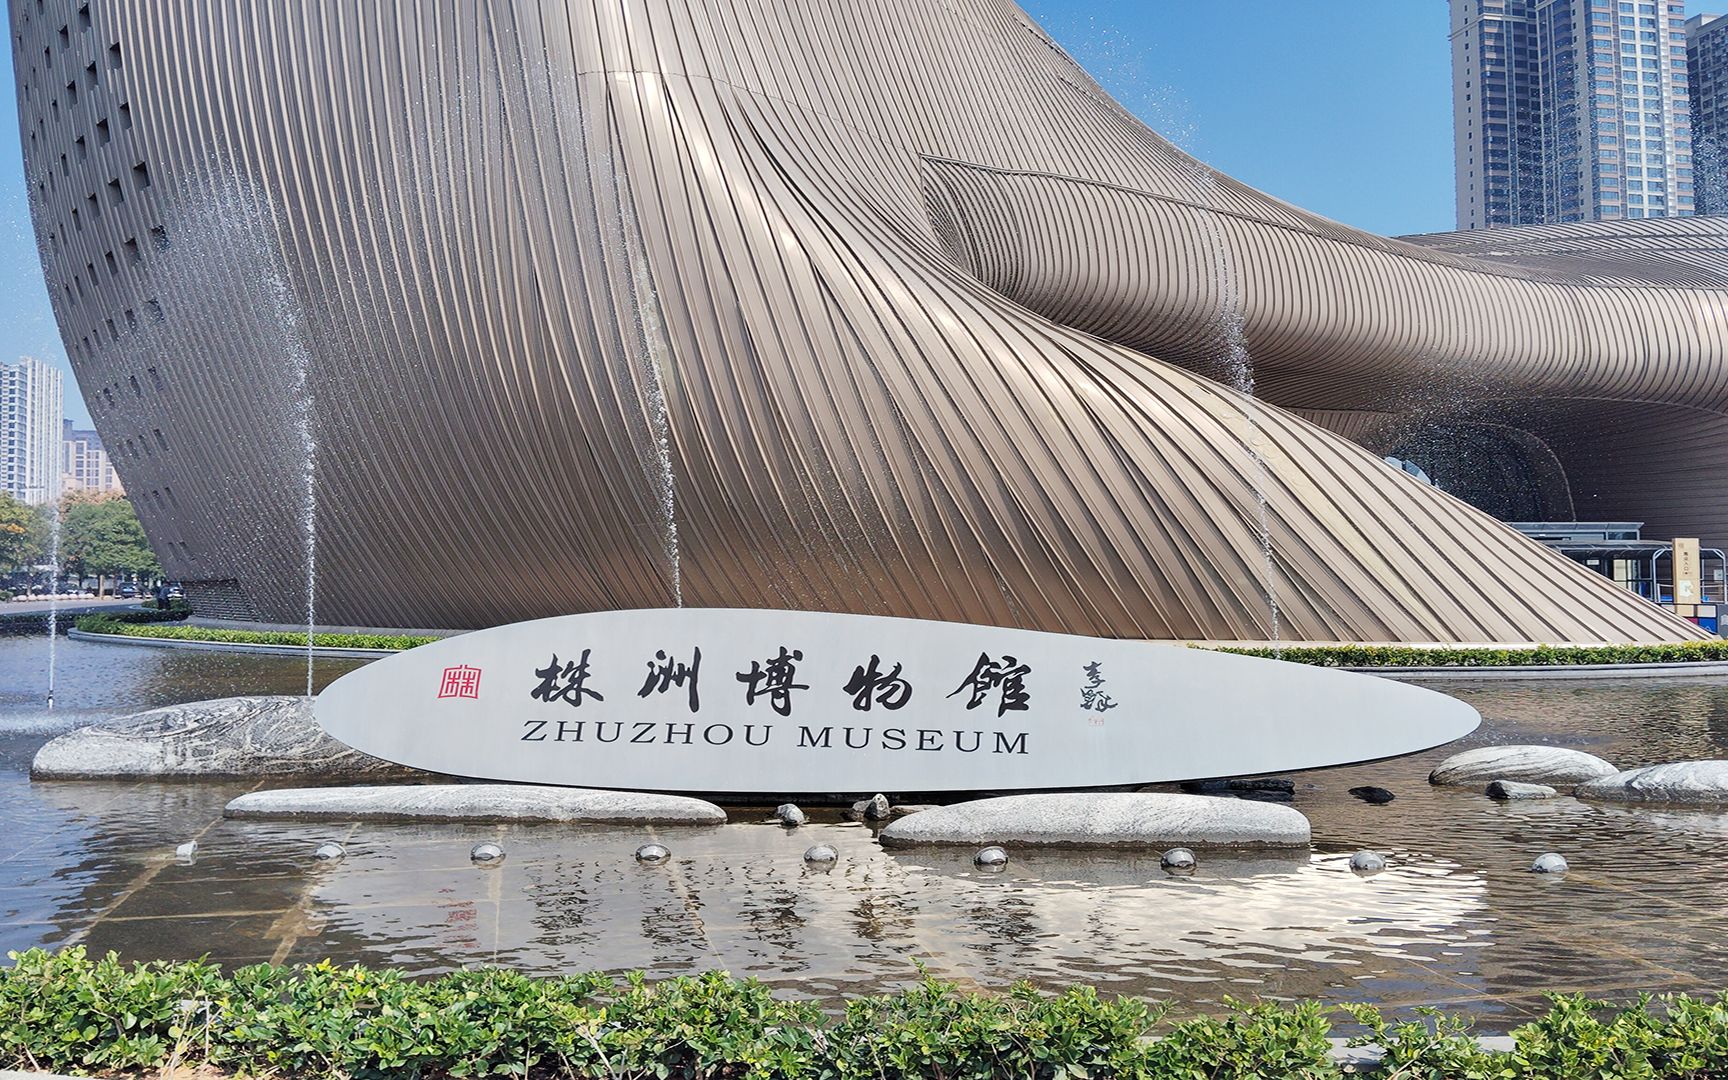 株洲市博物馆logo图片